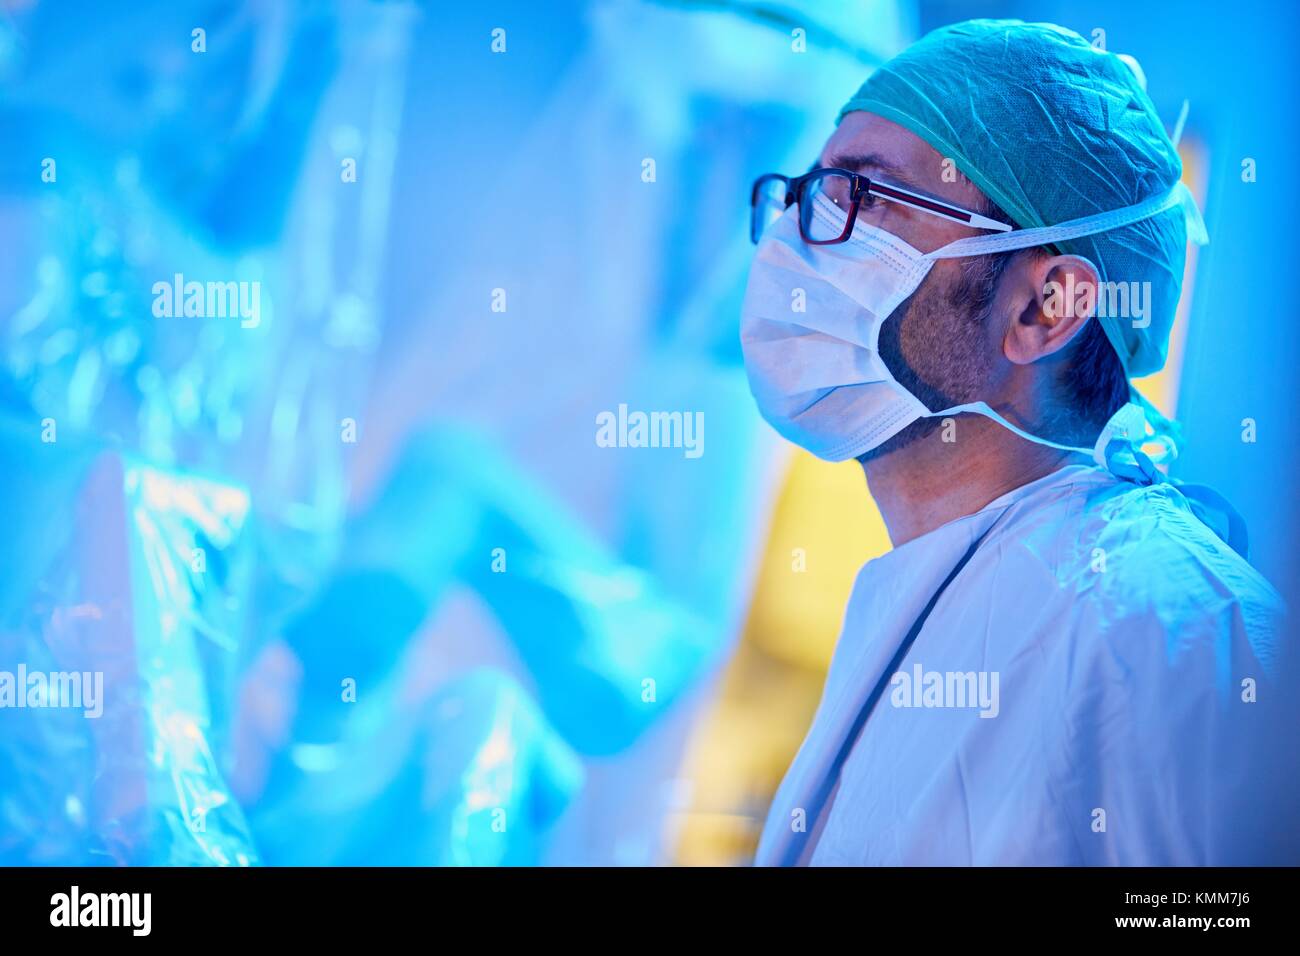 Il trattamento chirurgico del cancro della prostata, prostatectomia radicale, Da Vinci Robot chirurgico, Team di chirurghi di medici Madina & Azparren, urologia, Foto Stock